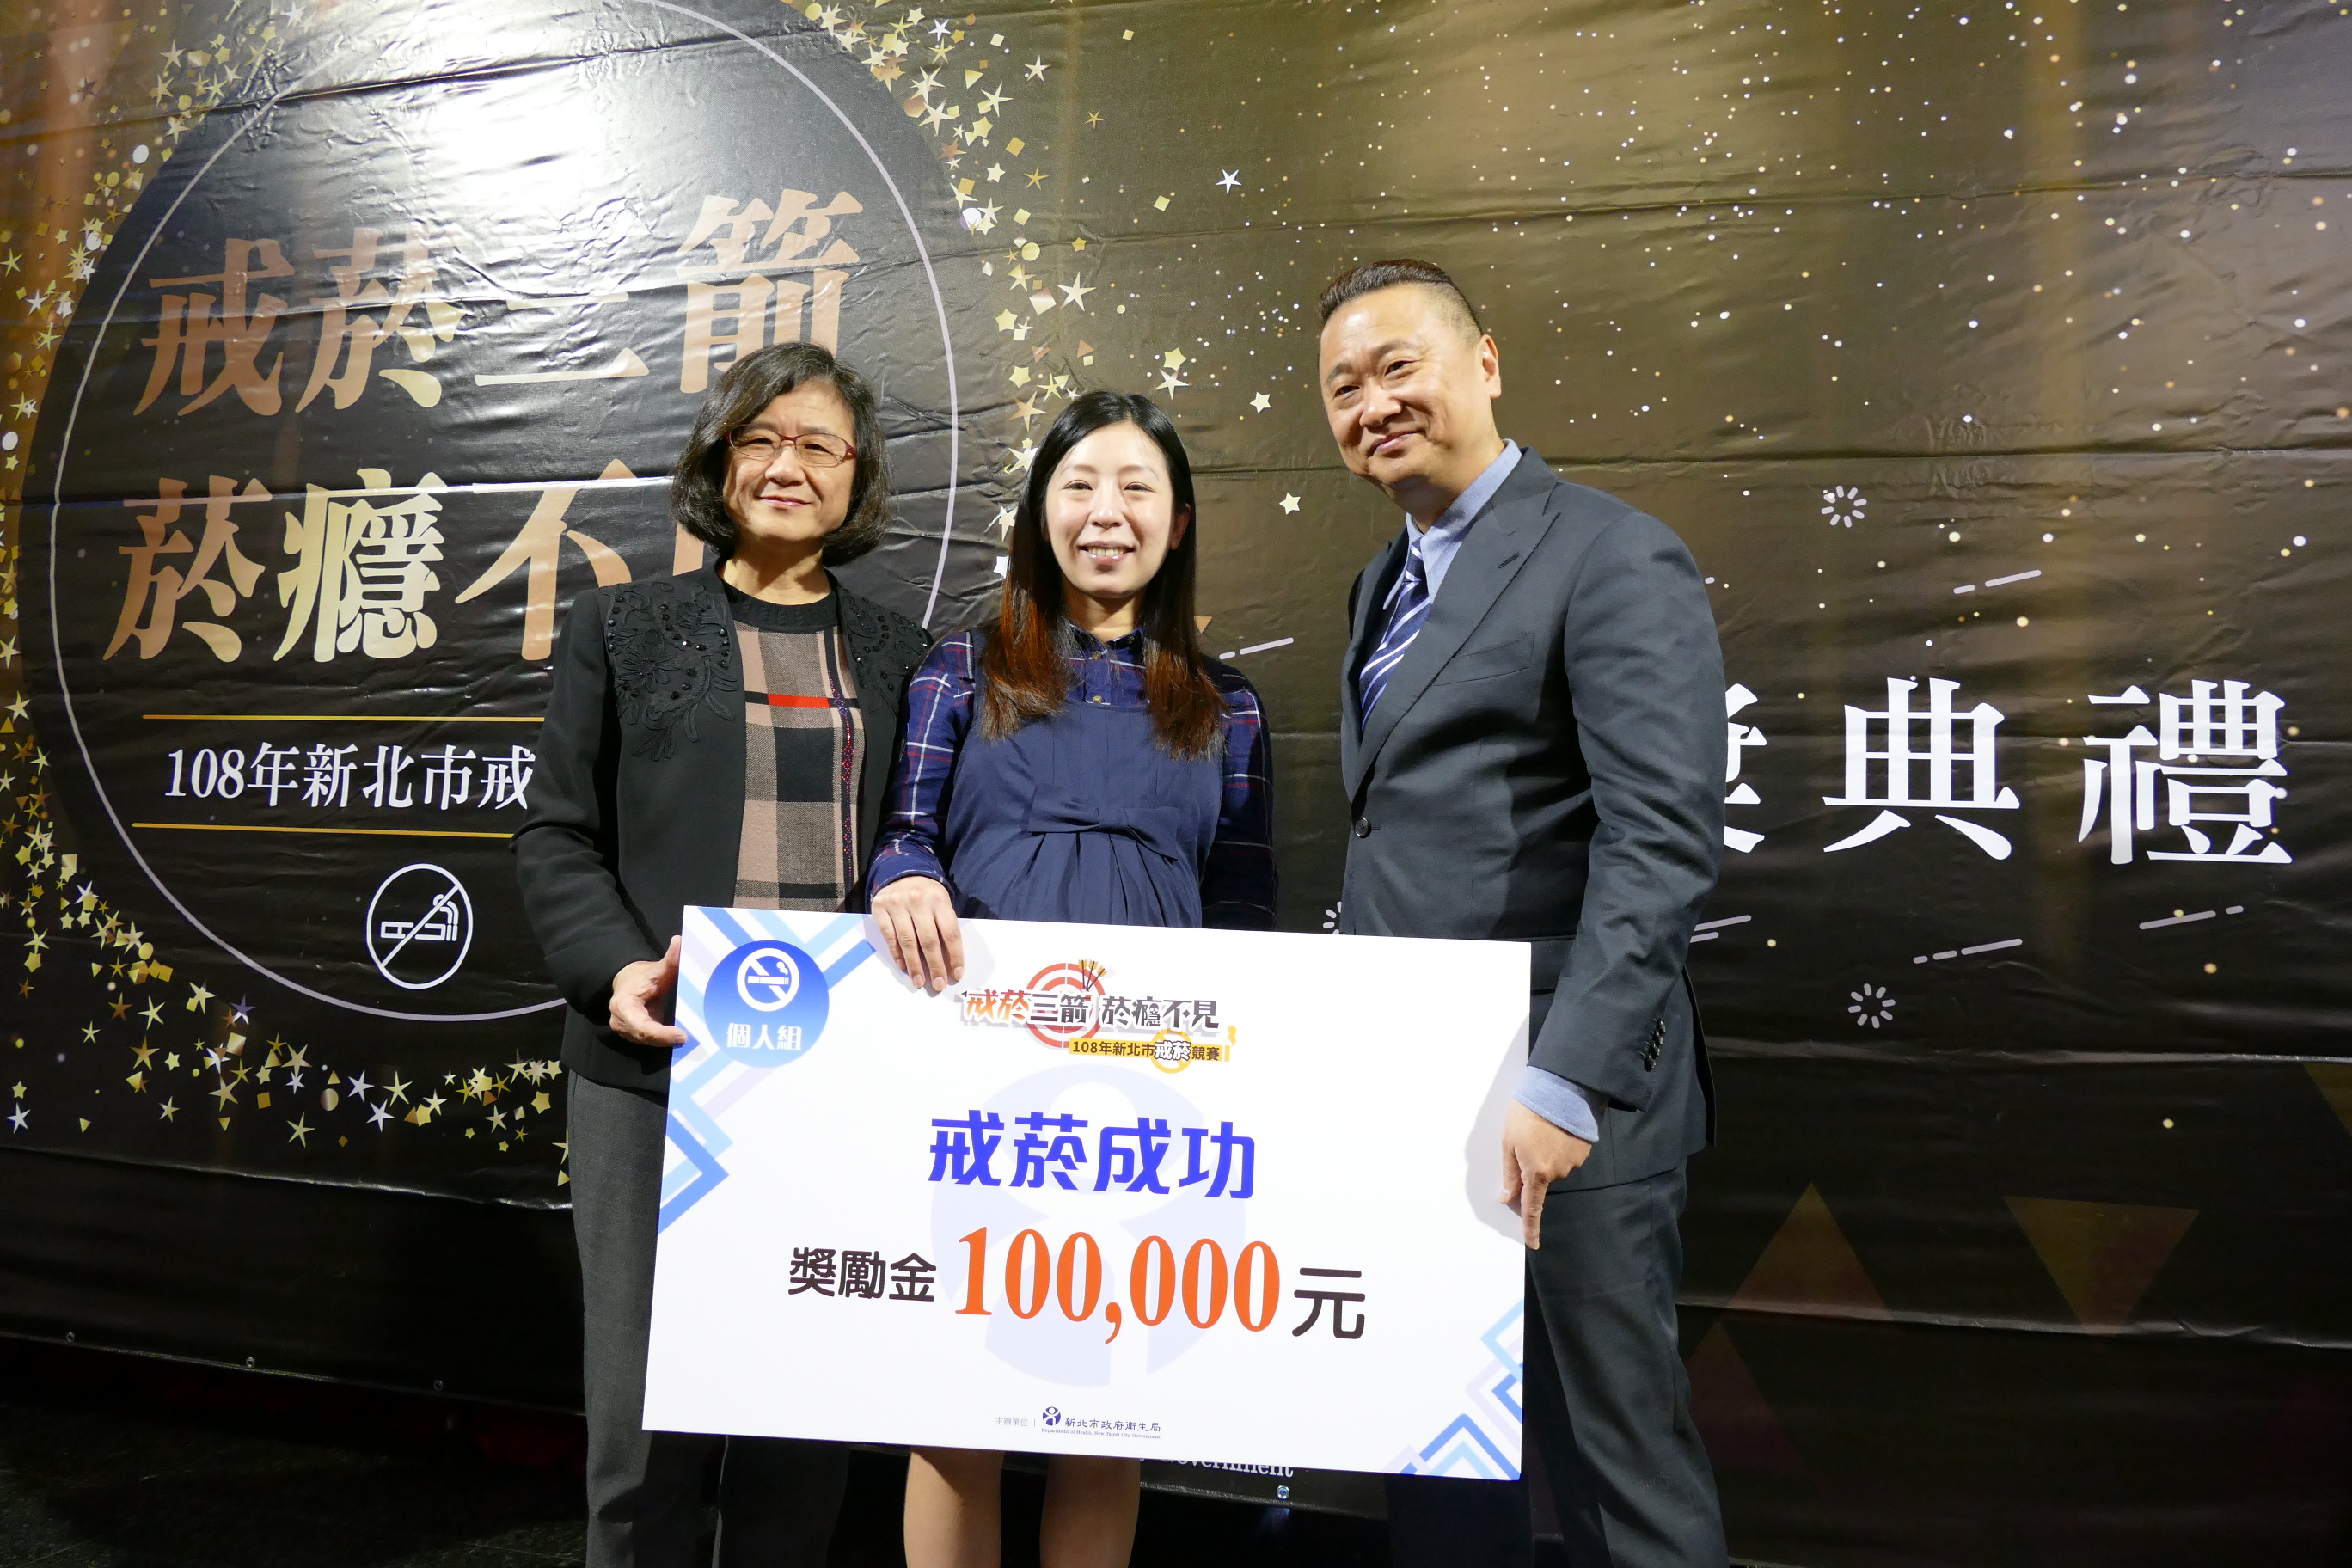 衛生局陳潤秋與個人組10萬元得獎者劉小姐(孕婦)以及藝人邰智源合影。